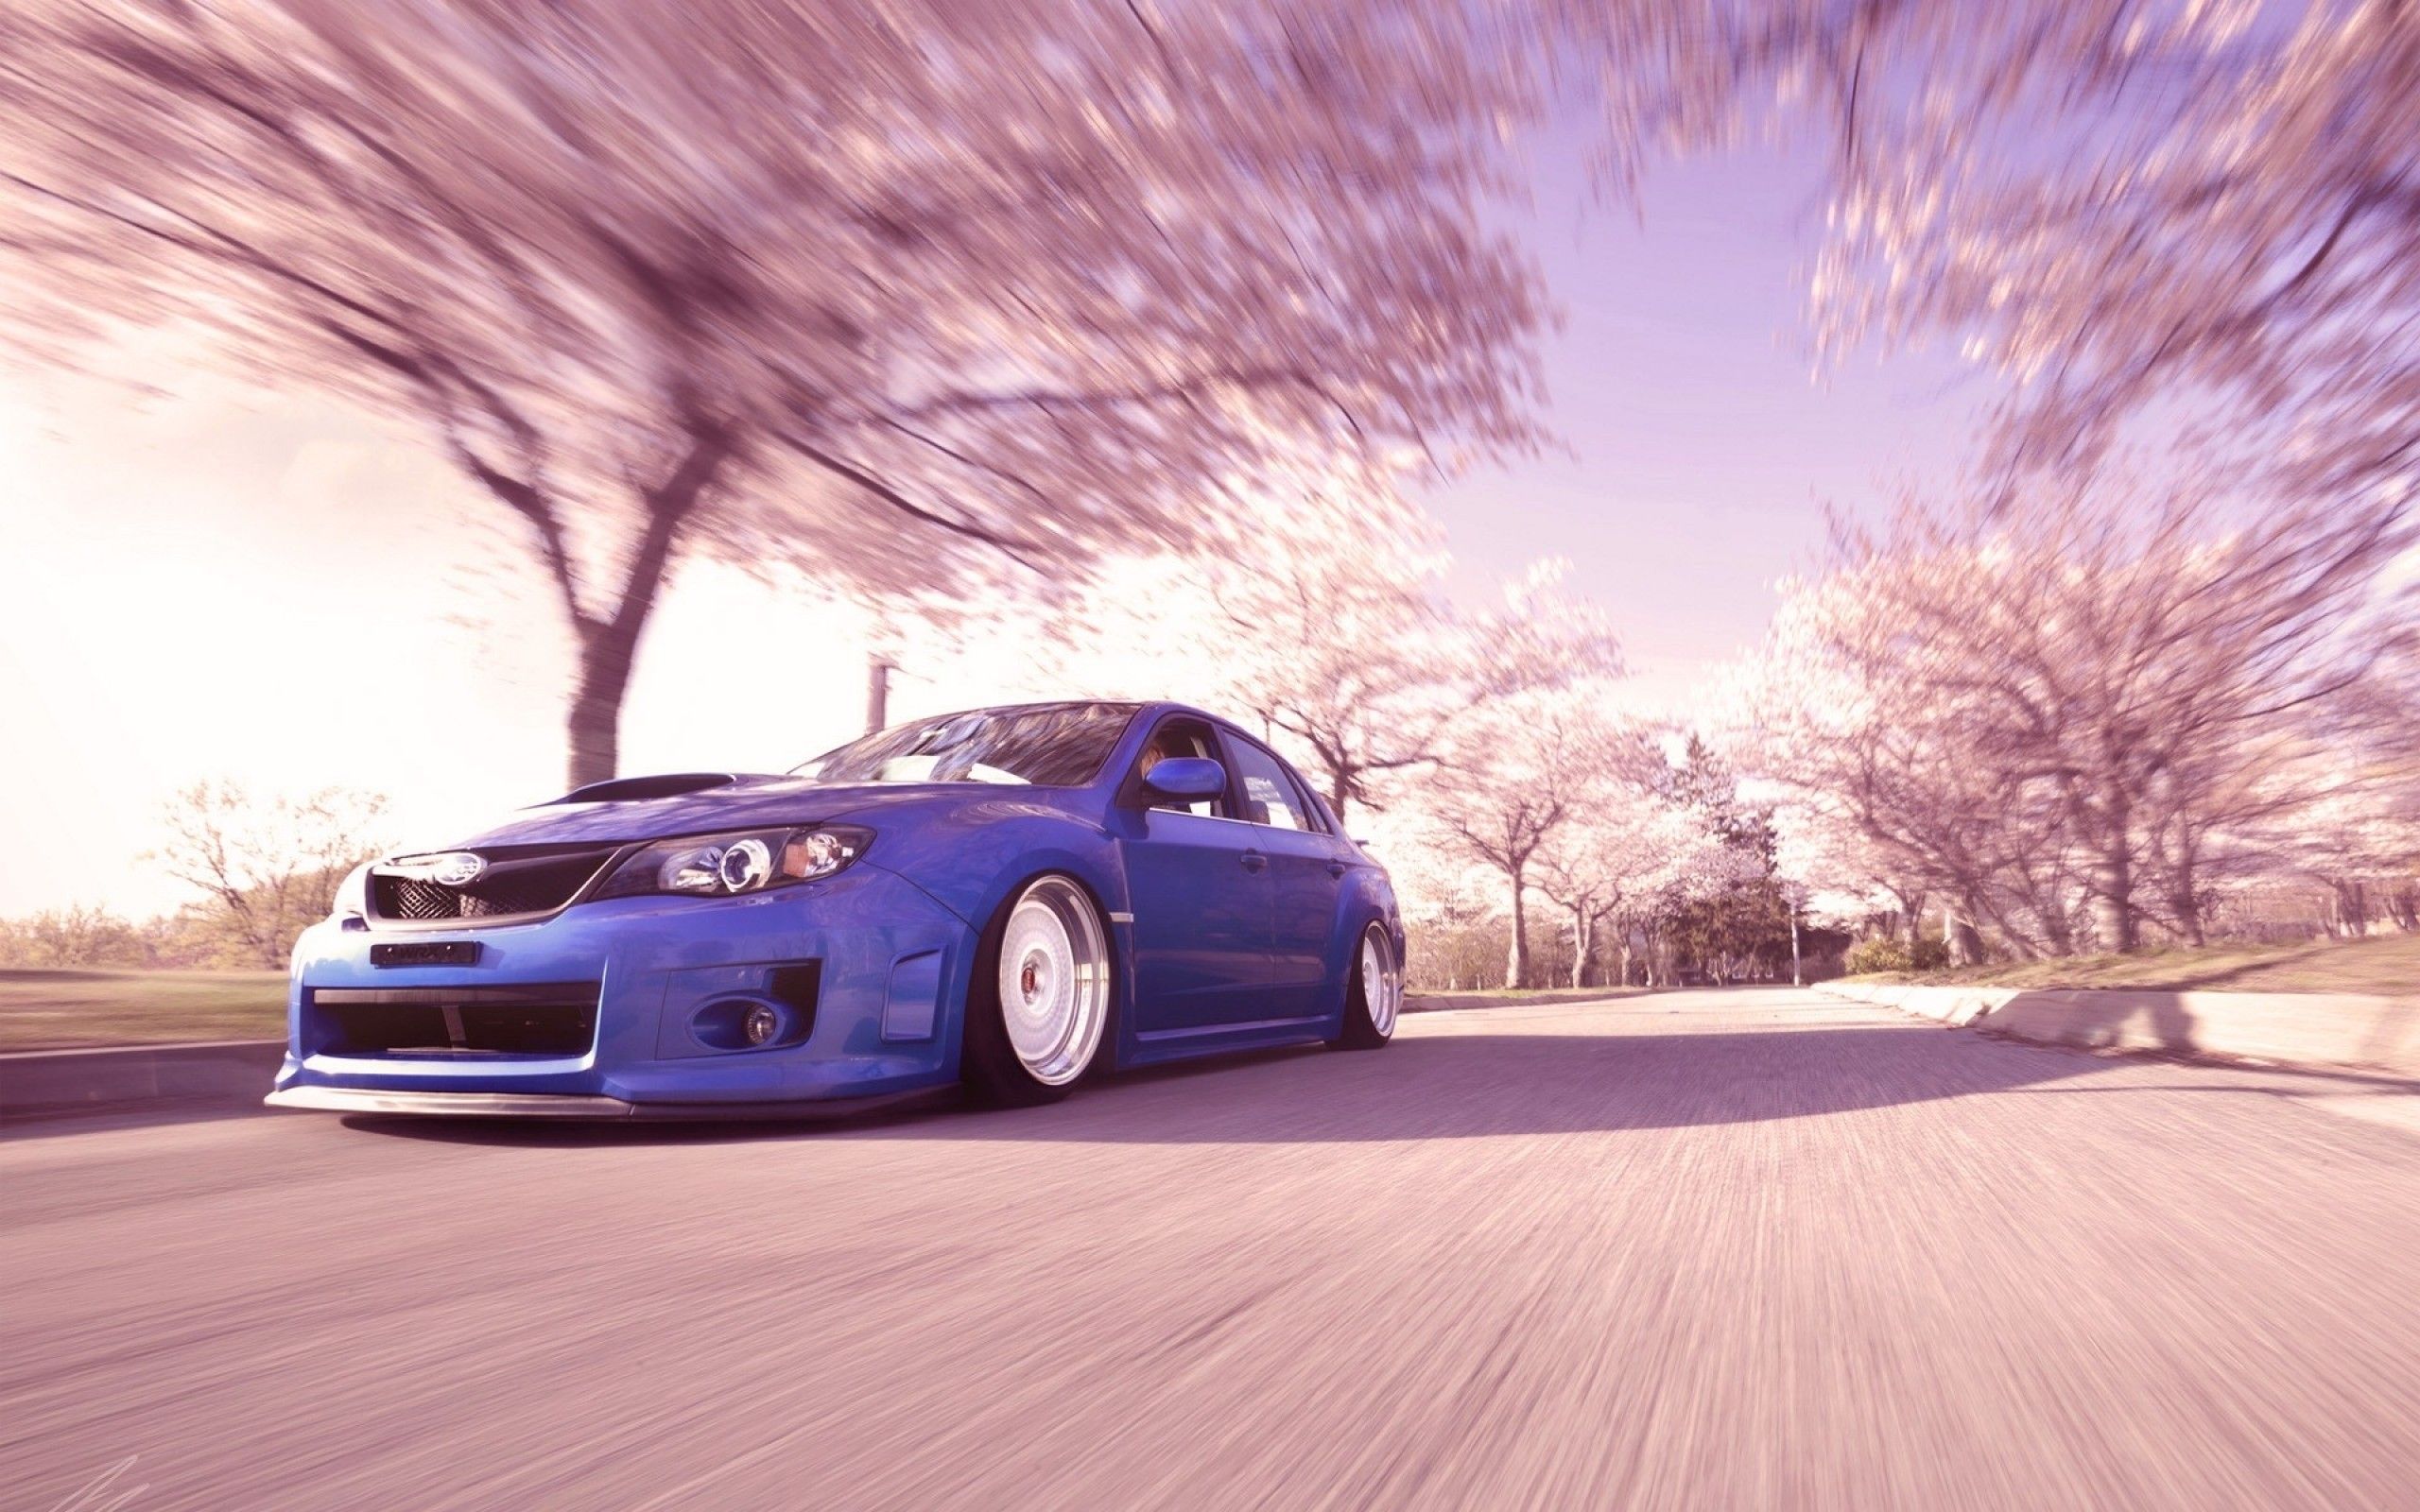 Download 2560x1600 Subaru Wrx Sti, Blurred, Trees, Spring, Cars